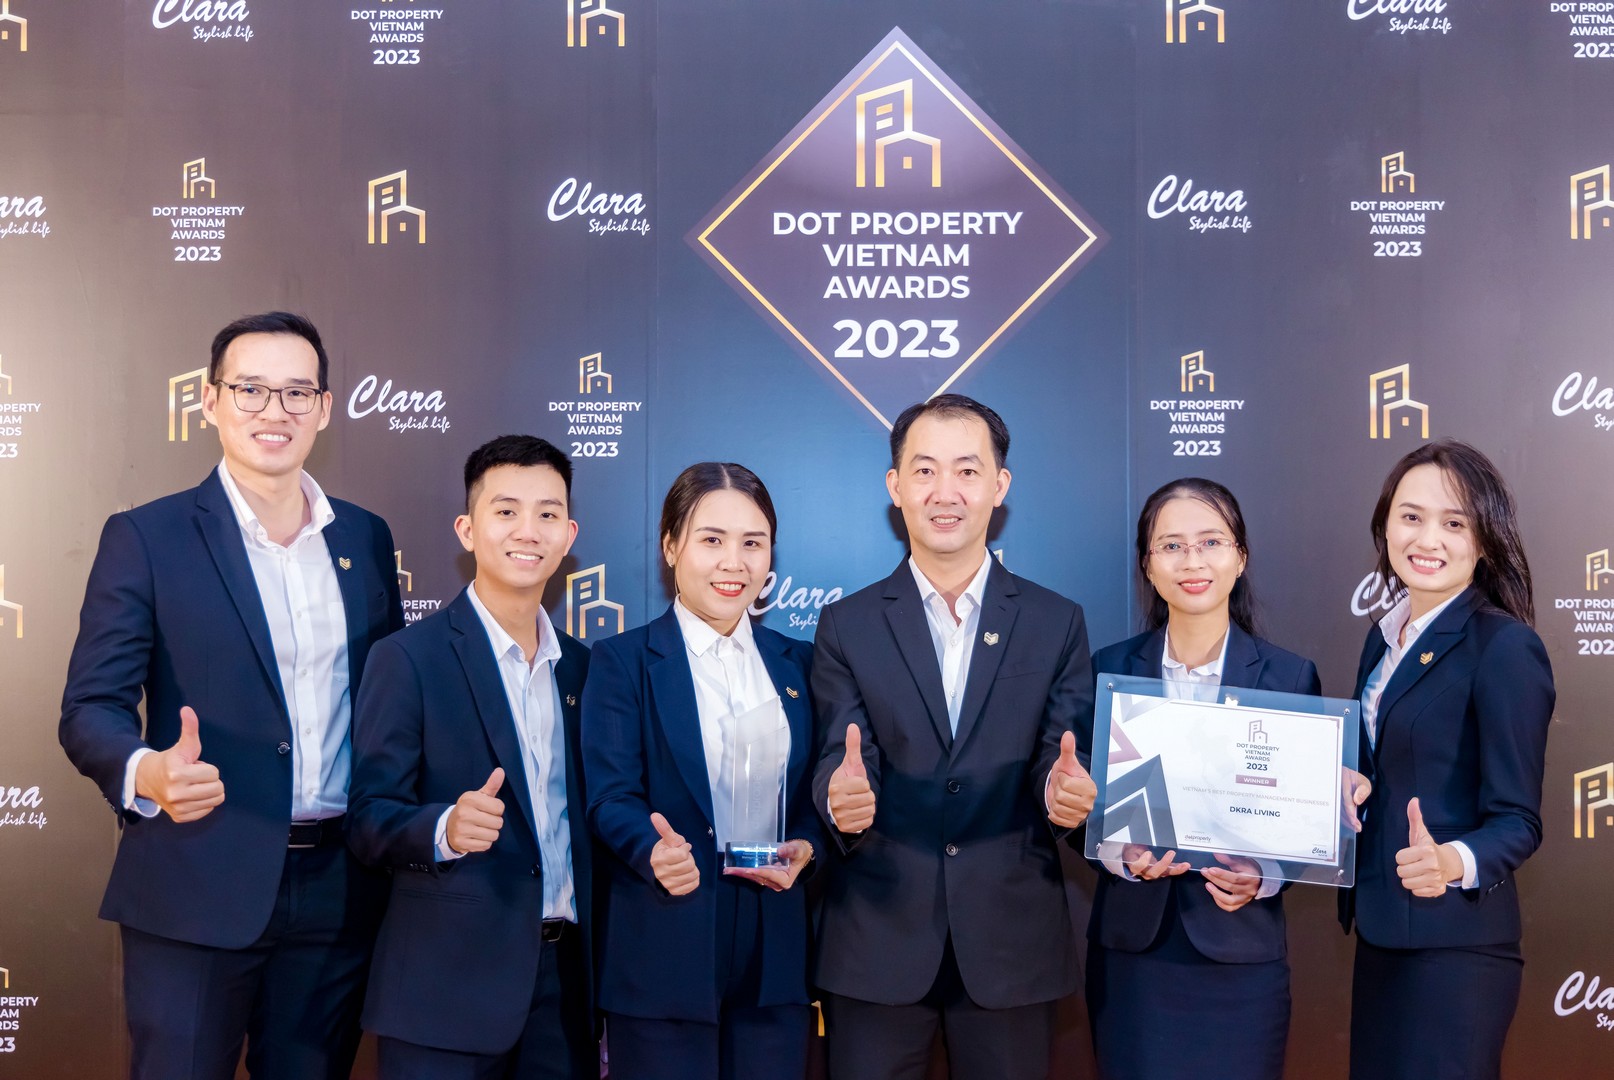 DKRA Living: Chân dung nhà quản lý - vận hành Bất động sản tốt nhất Việt Nam 2023